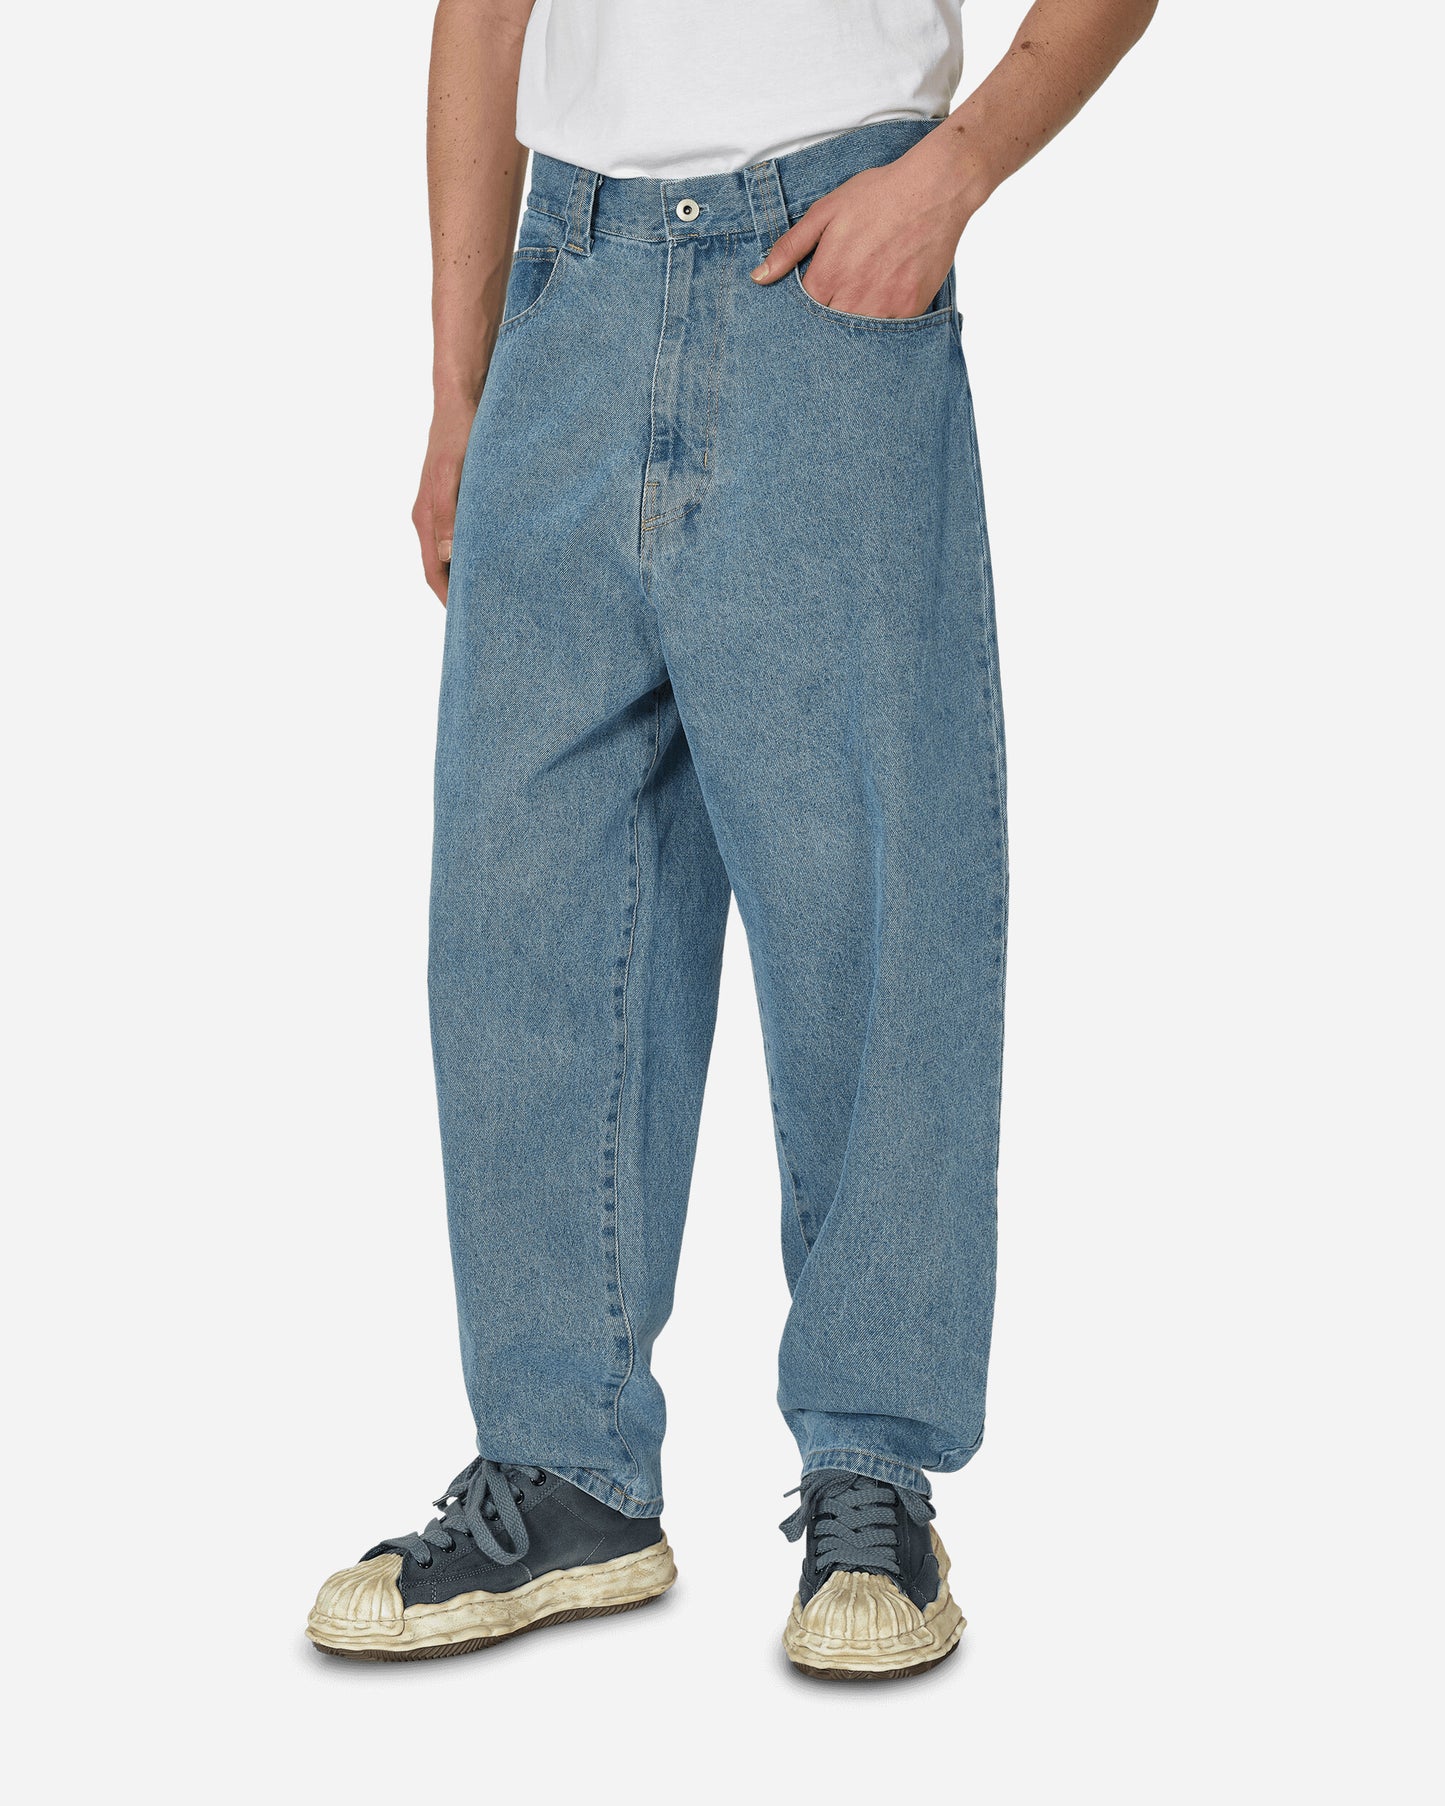 Phingerin P Pokets Jeans Sax Pants Denim PD-241-BT-061 A